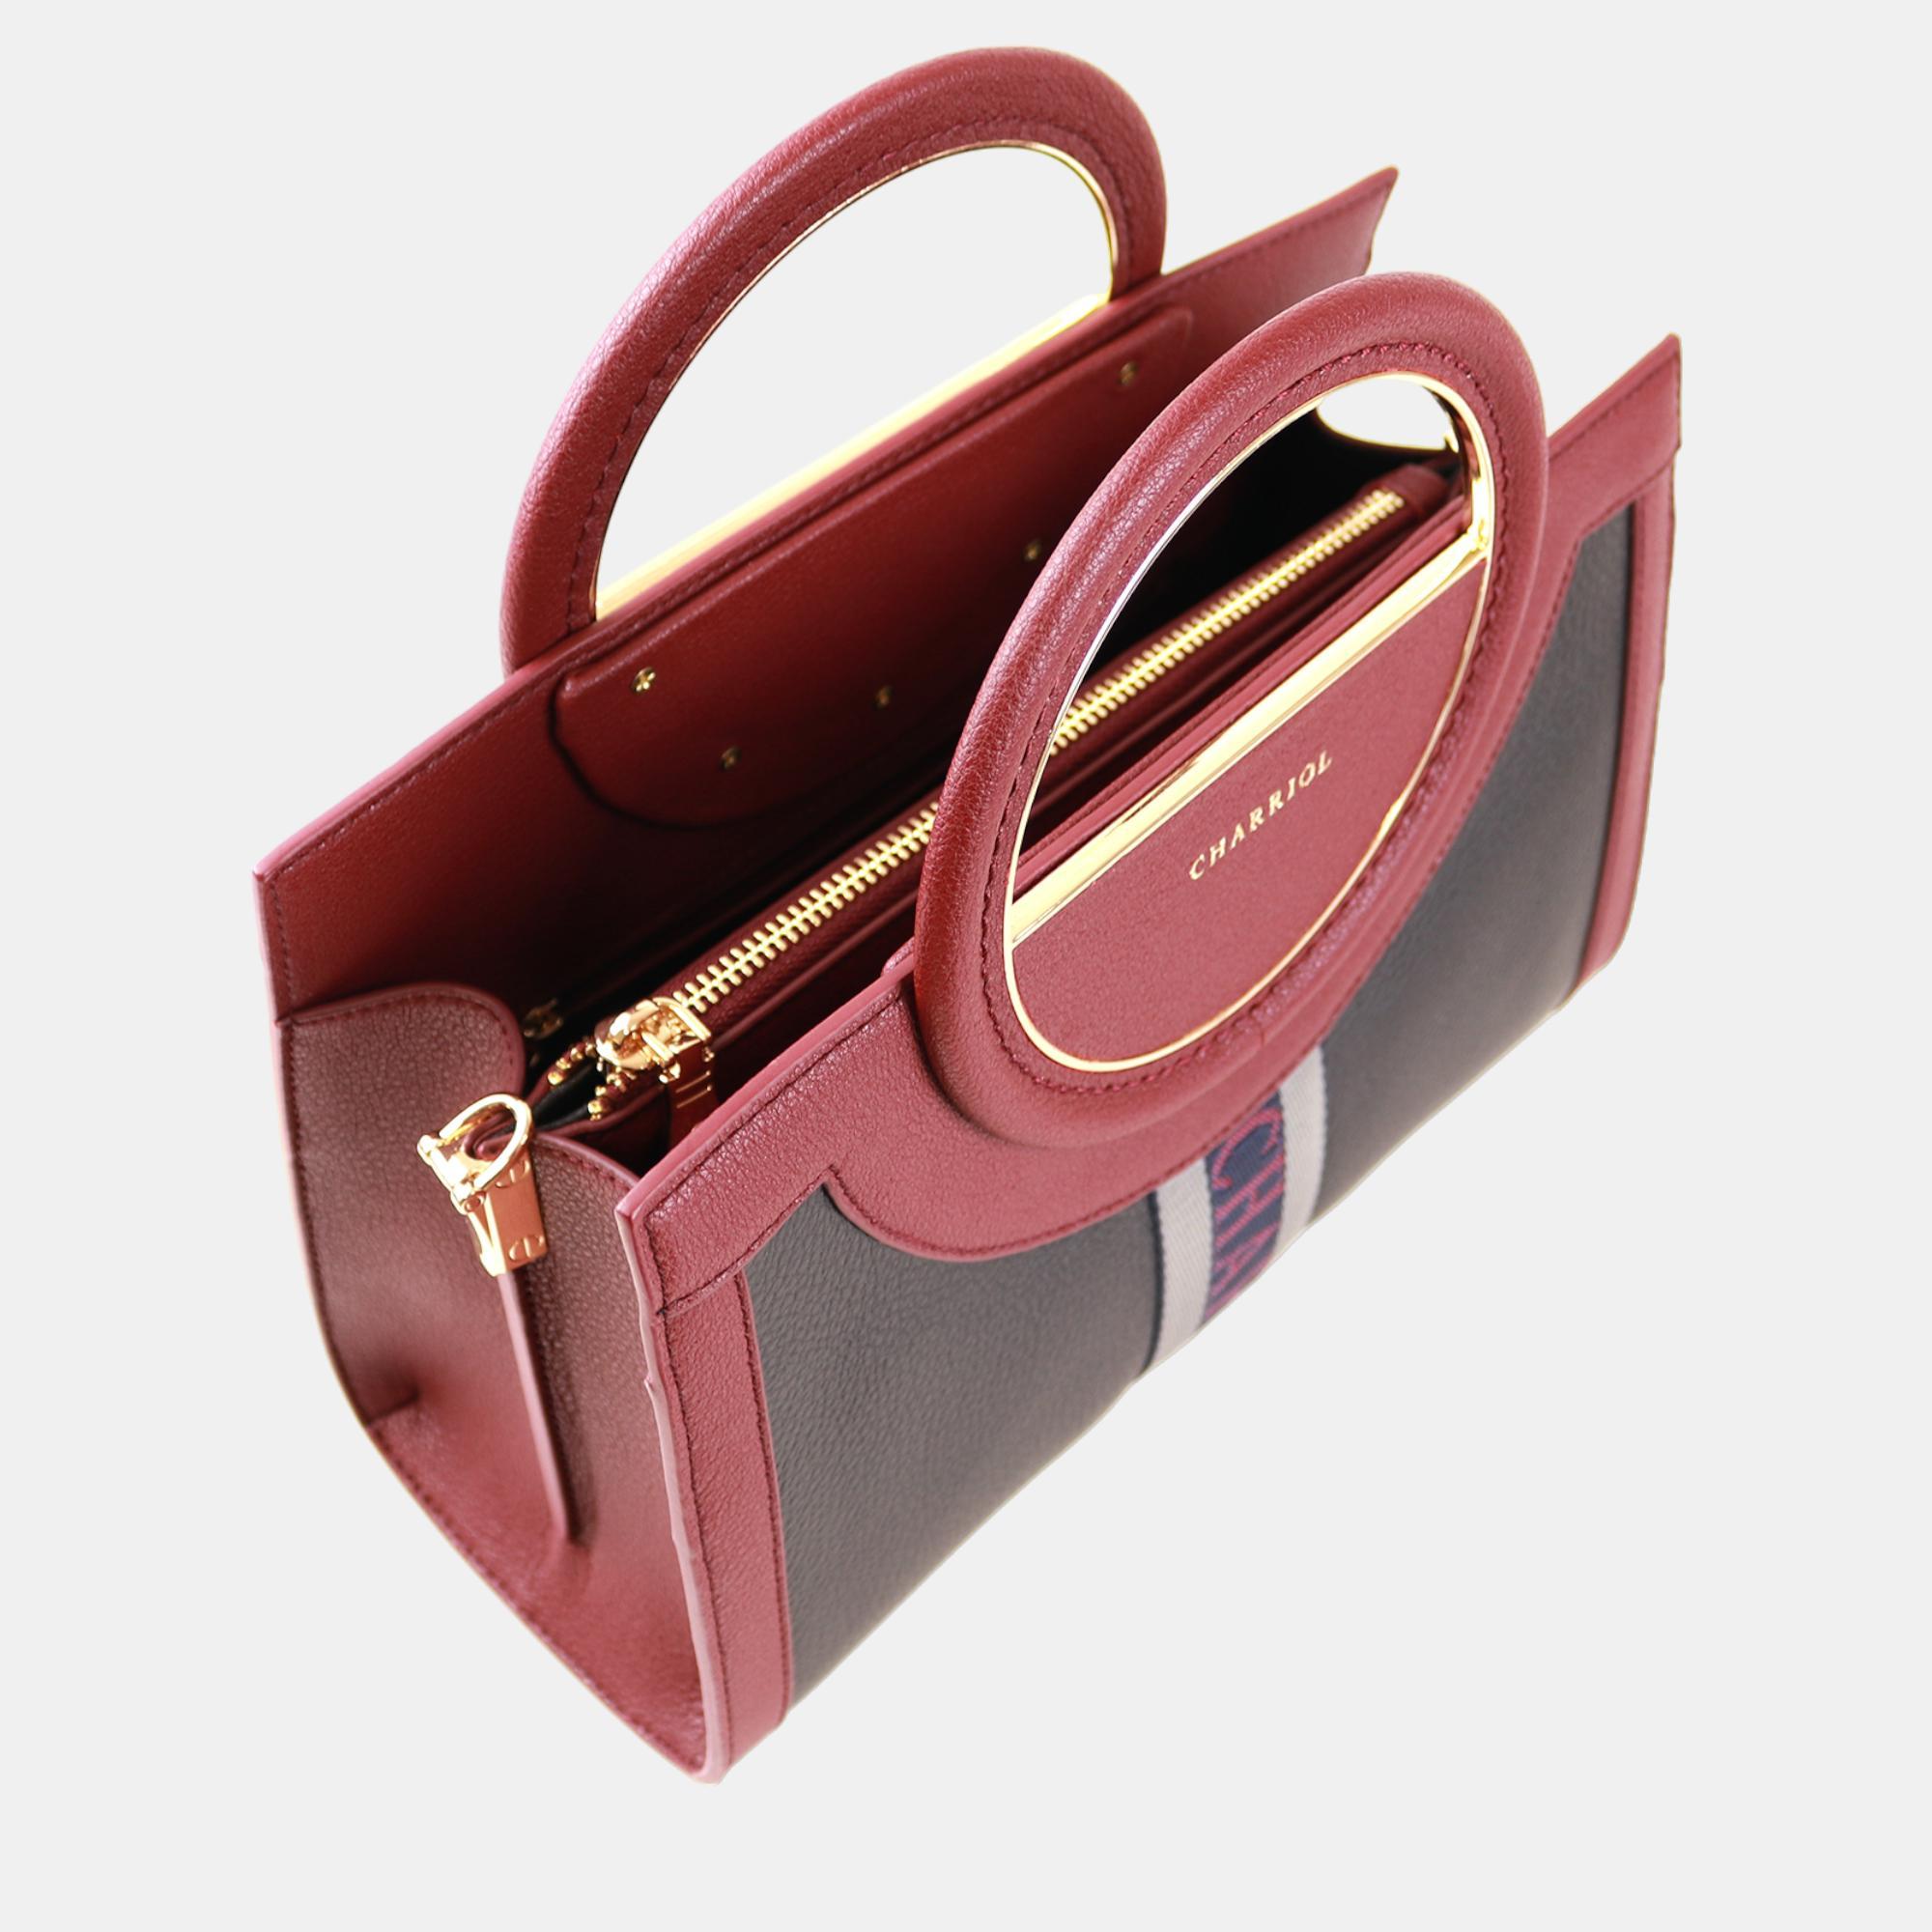 Charriol Bordeaux Leather Deauville Handbag